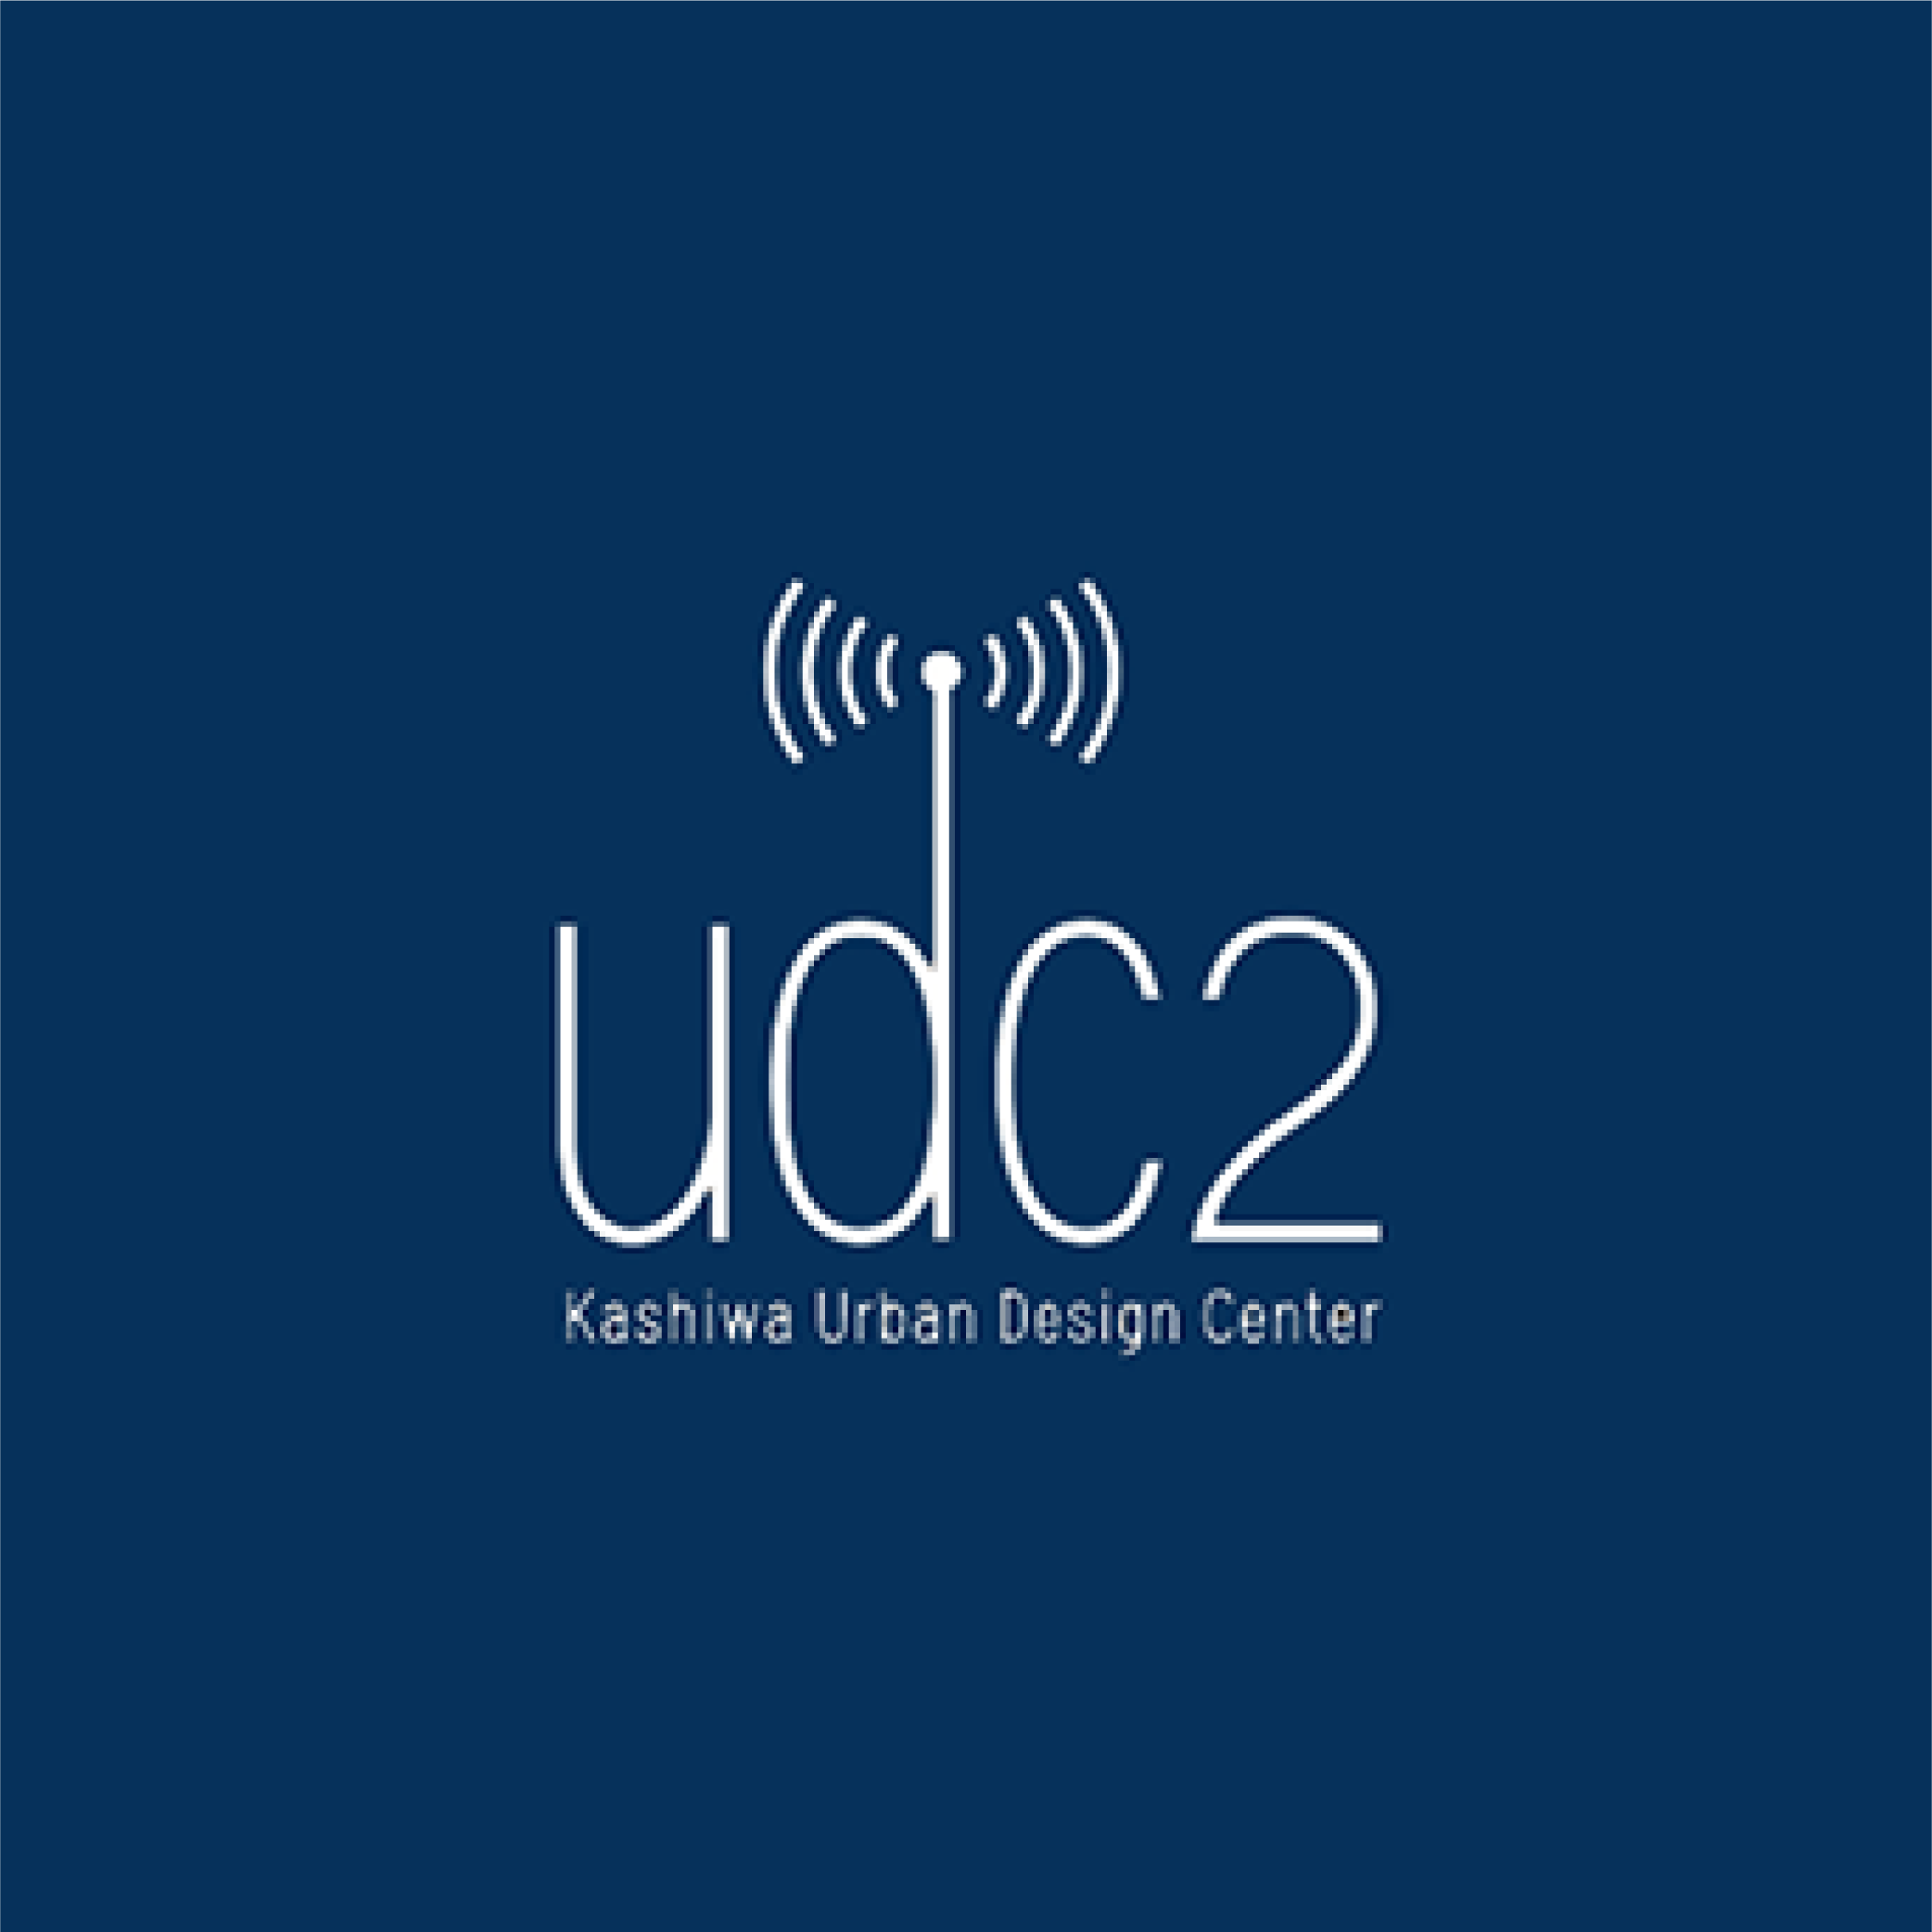 UDC2